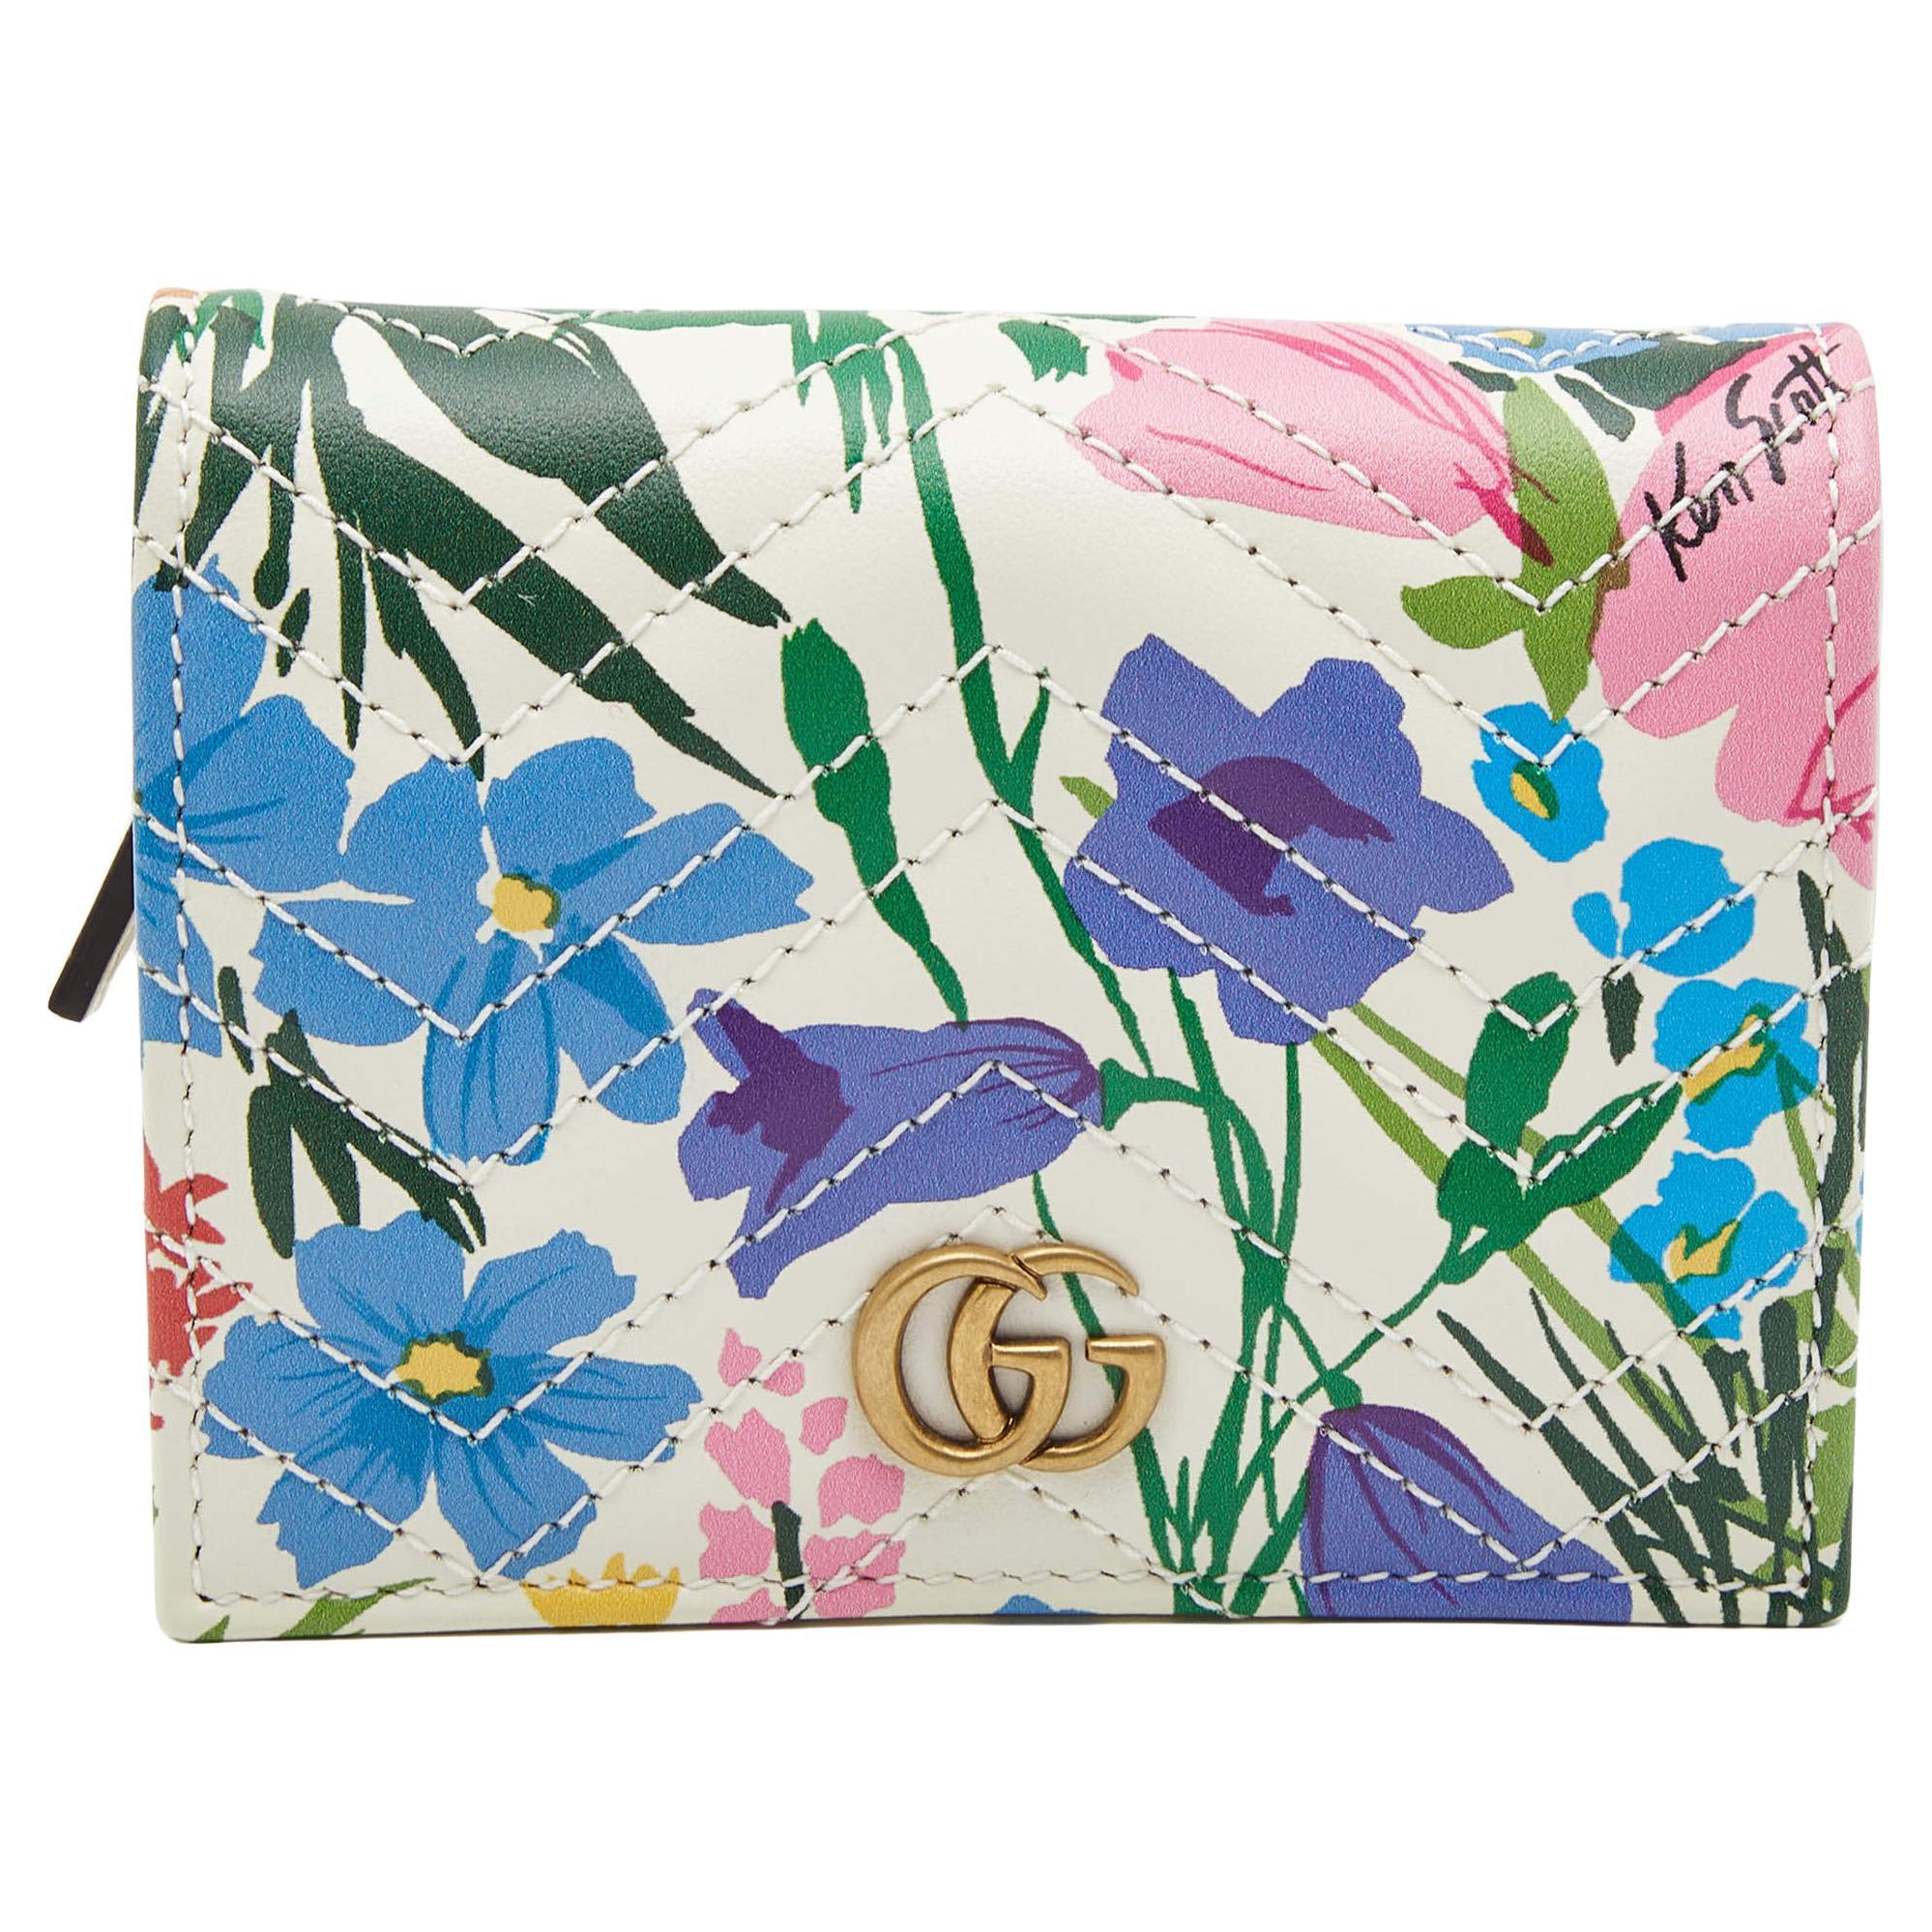 Gucci x Ken Scott Multicolor Floral Print Leder GG Marmont Kartenetui